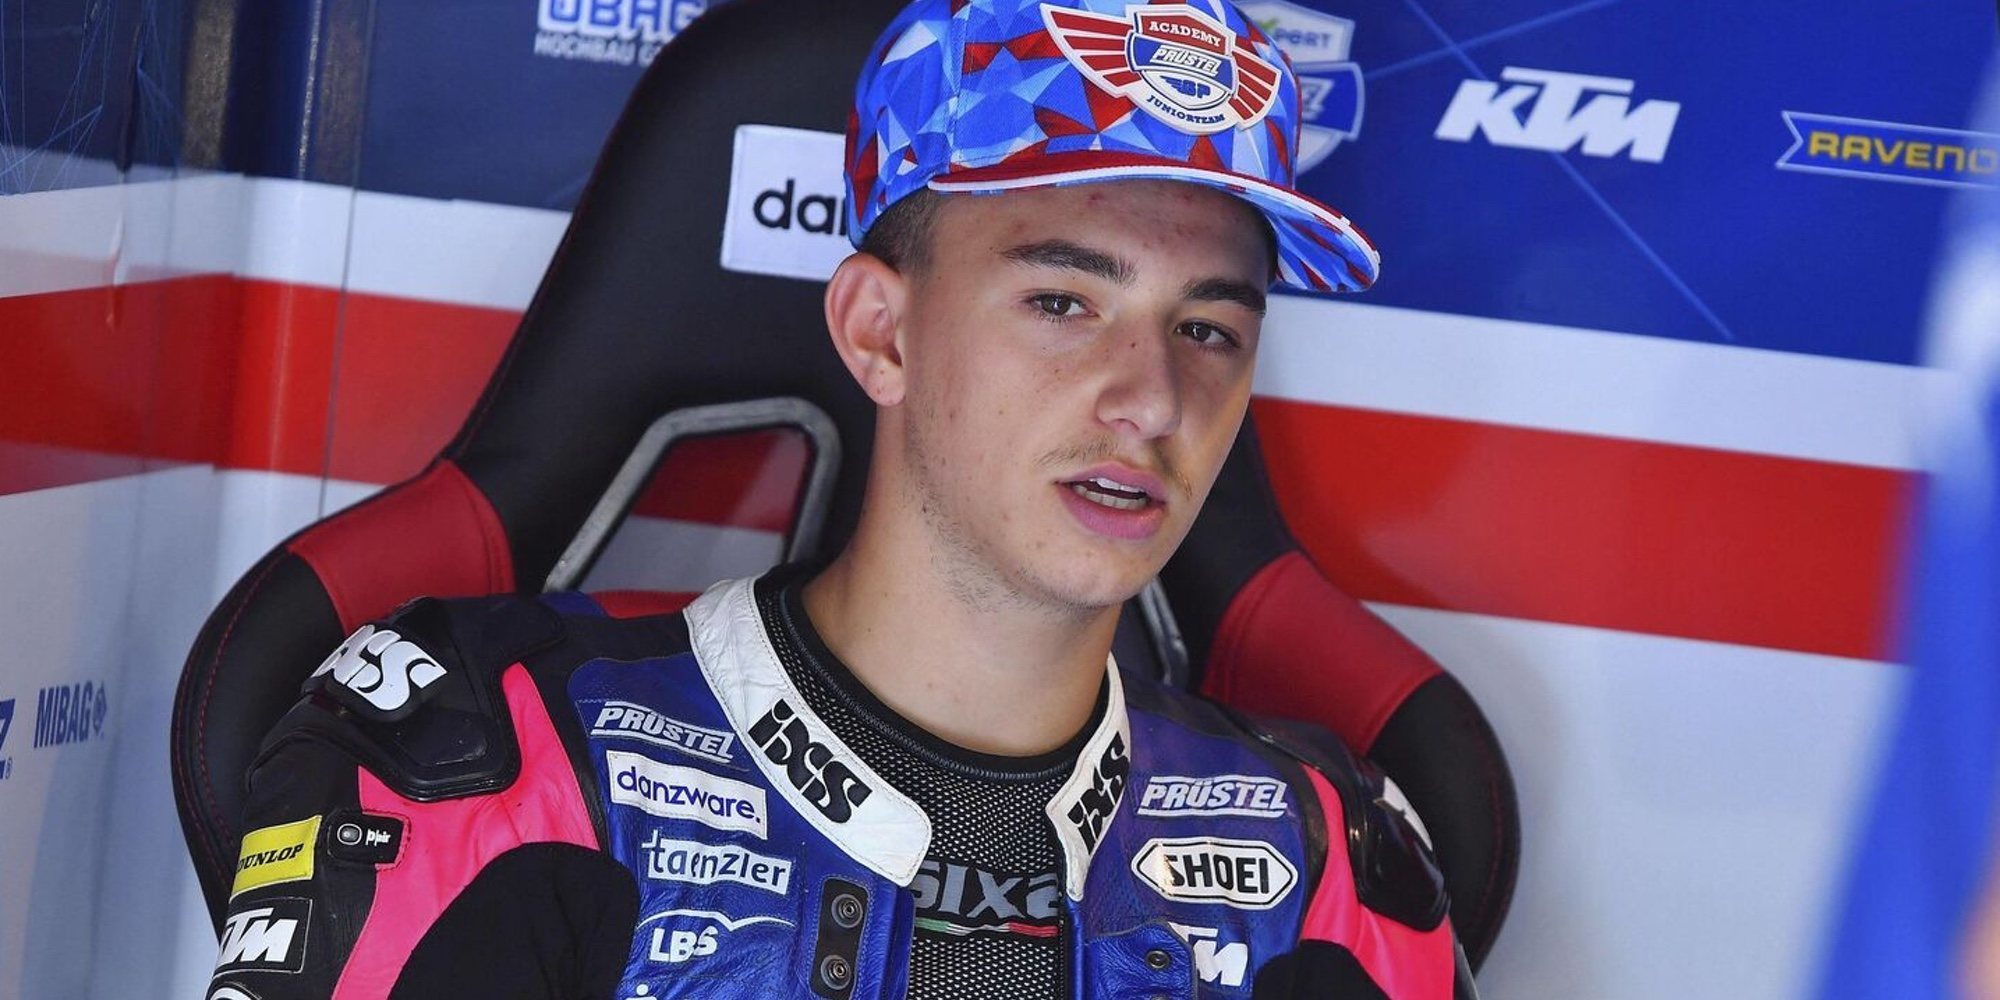 Muere el piloto Jason Dupasquier a los 19 años tras sufrir un grave accidente en el Gran Premio de Italia